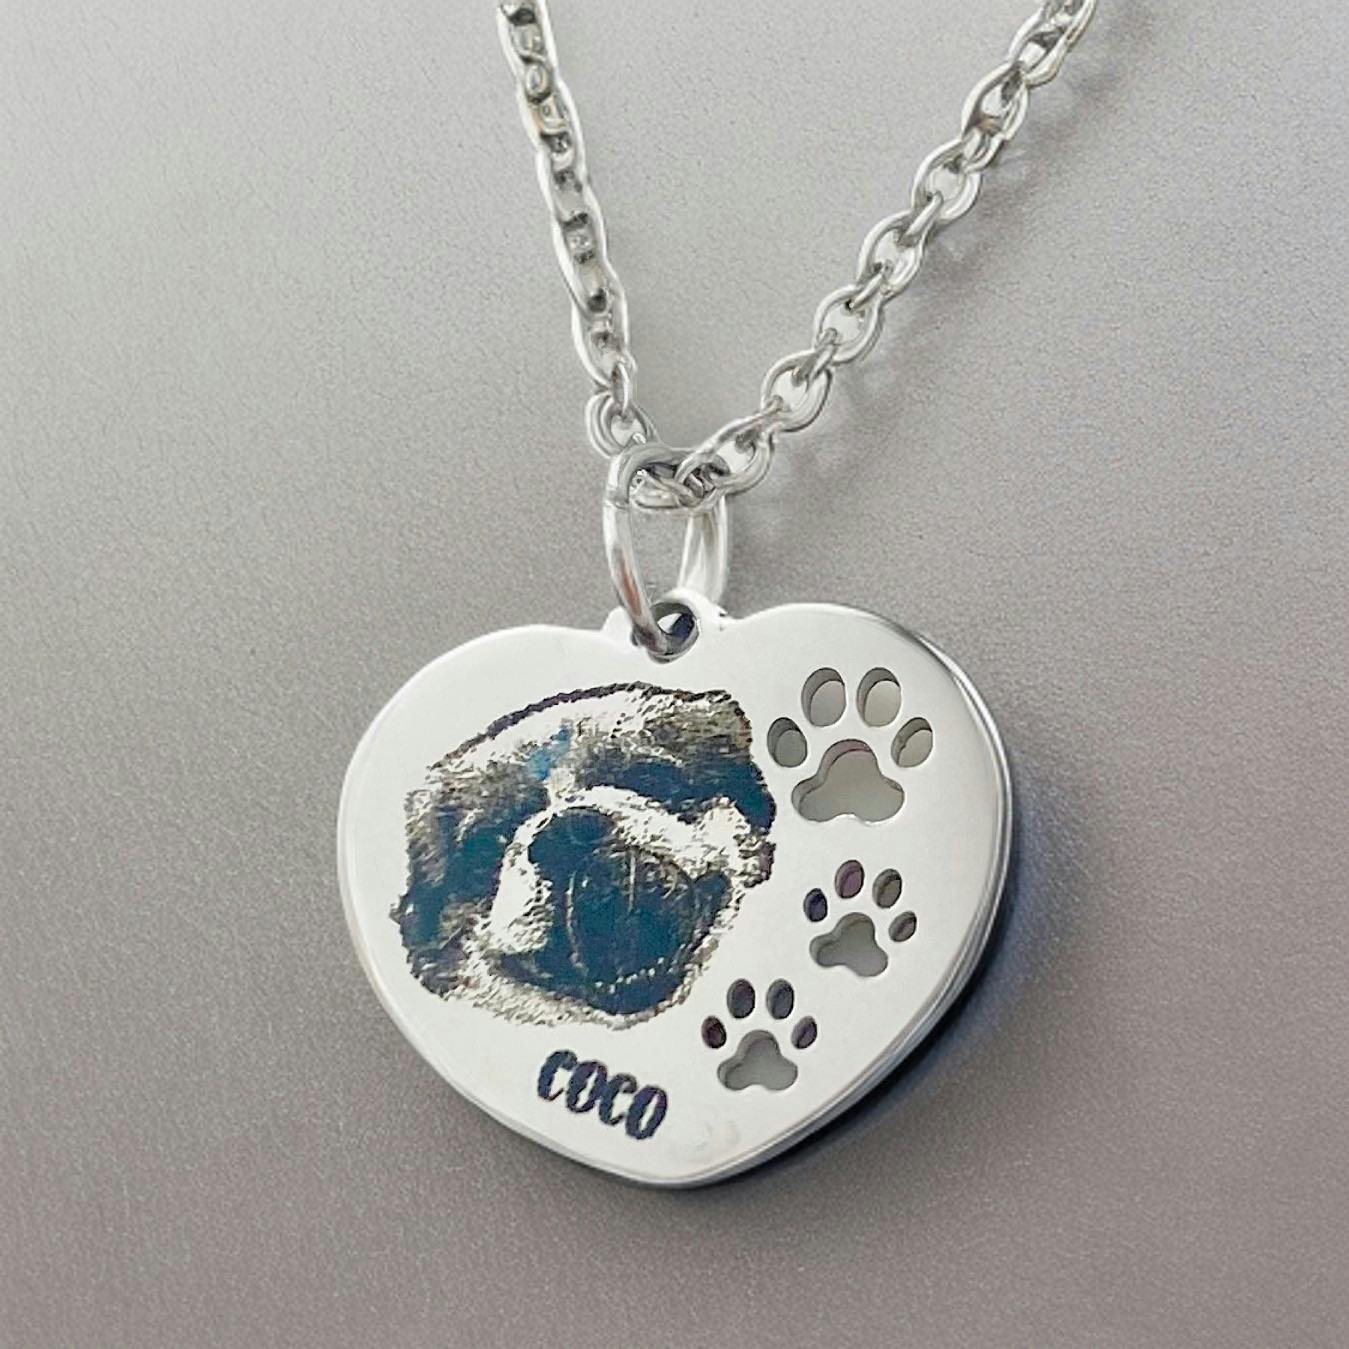 Personalized pet portrait necklace-pet lover gift